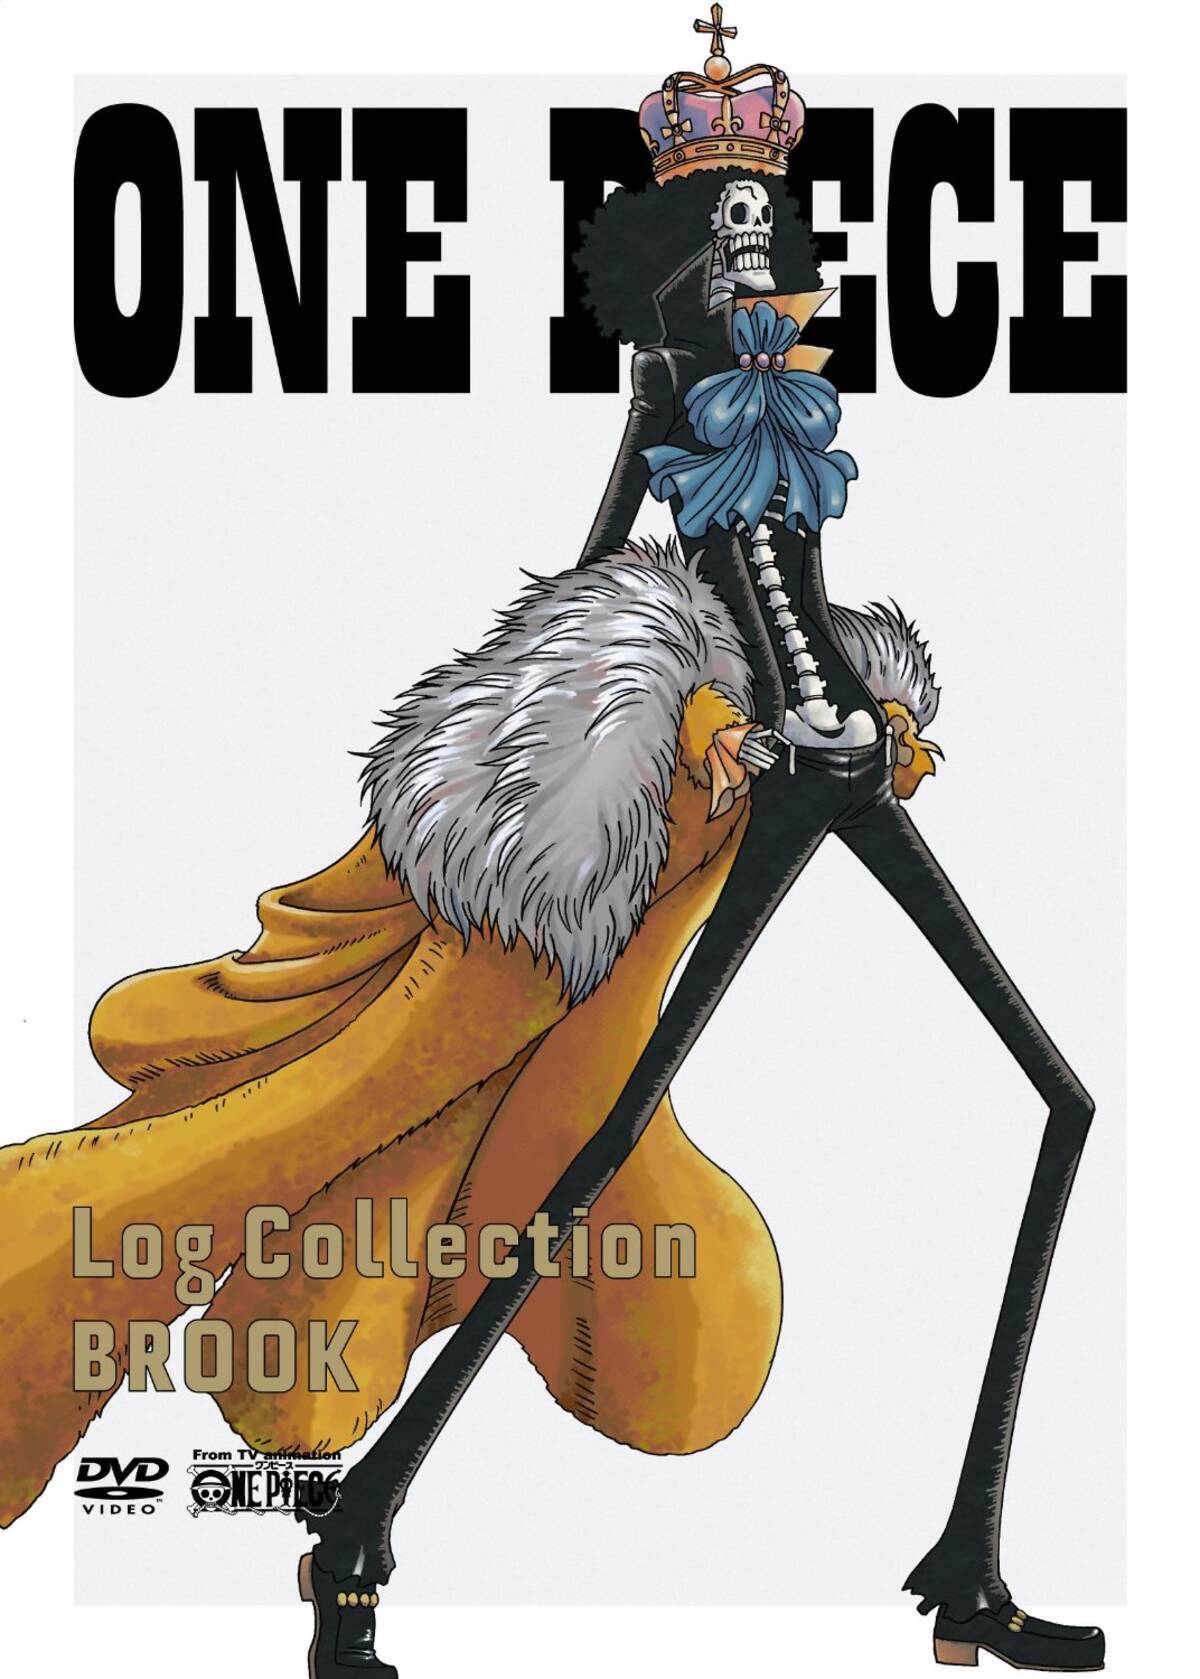 アニメキャラの魅力 友との再会を夢見て 50年の孤独に耐えた ブルック の魅力とは One Piece 15年3月3日 エキサイトニュース 2 2